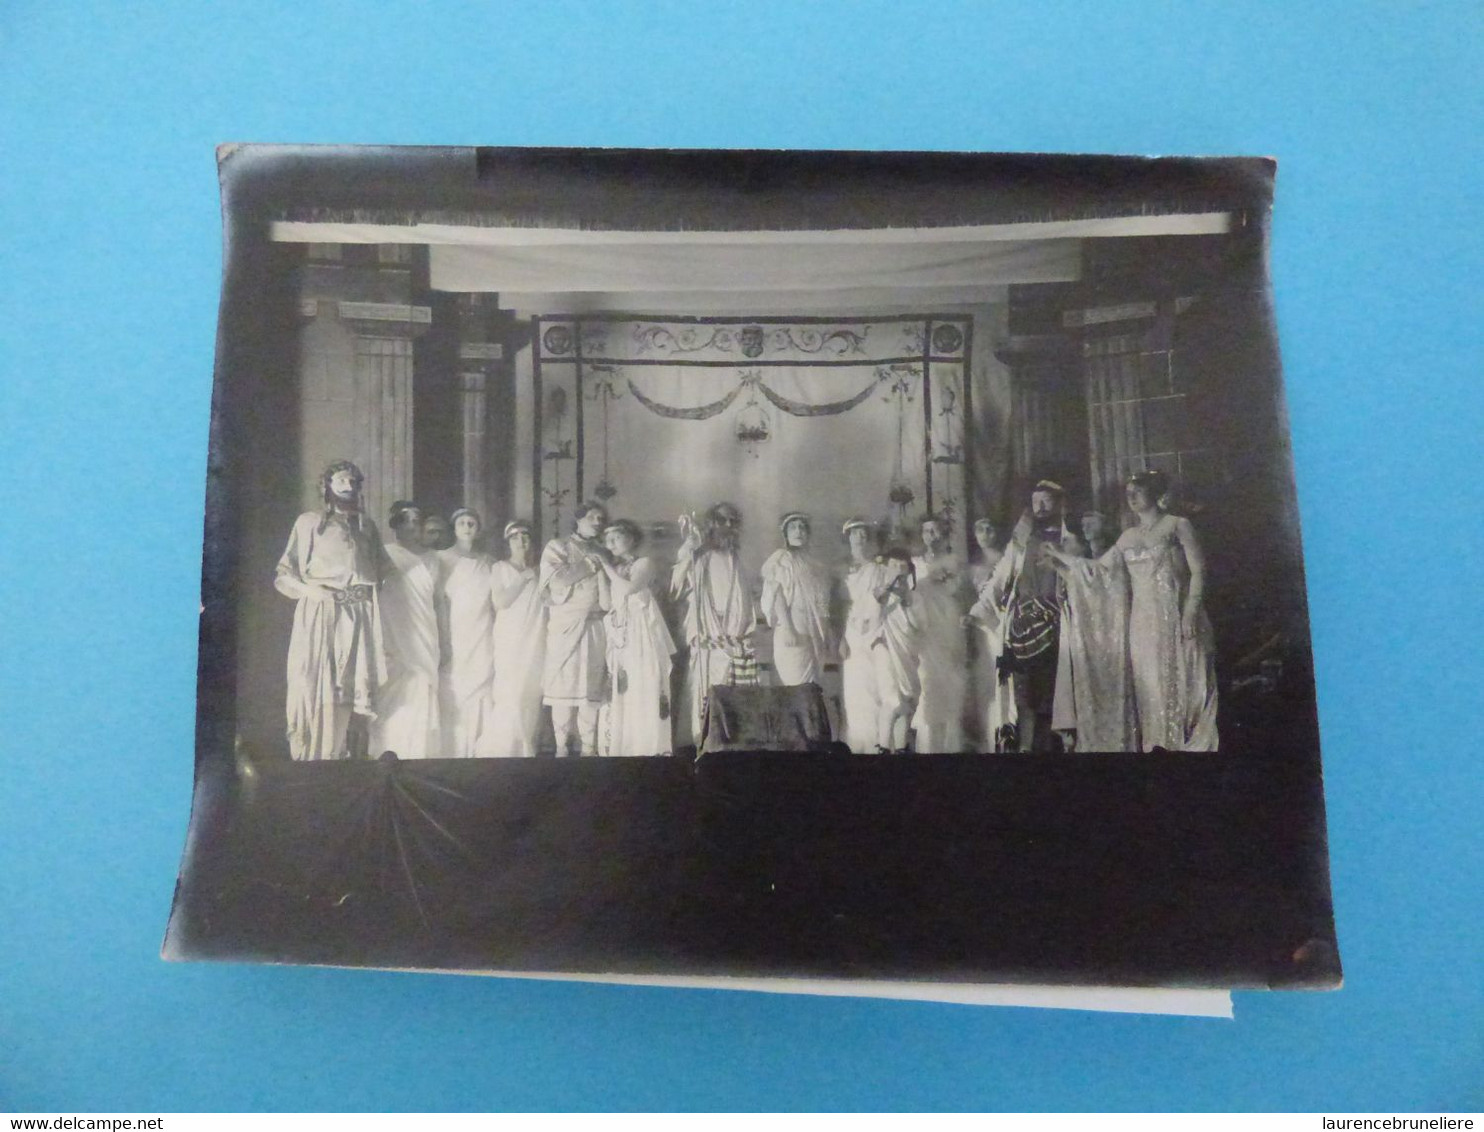 PHOTO ALBUMINEE - 44 NANTES ECOLE DES BEAUX-ARTS (THEATRE) - 1913 - Places